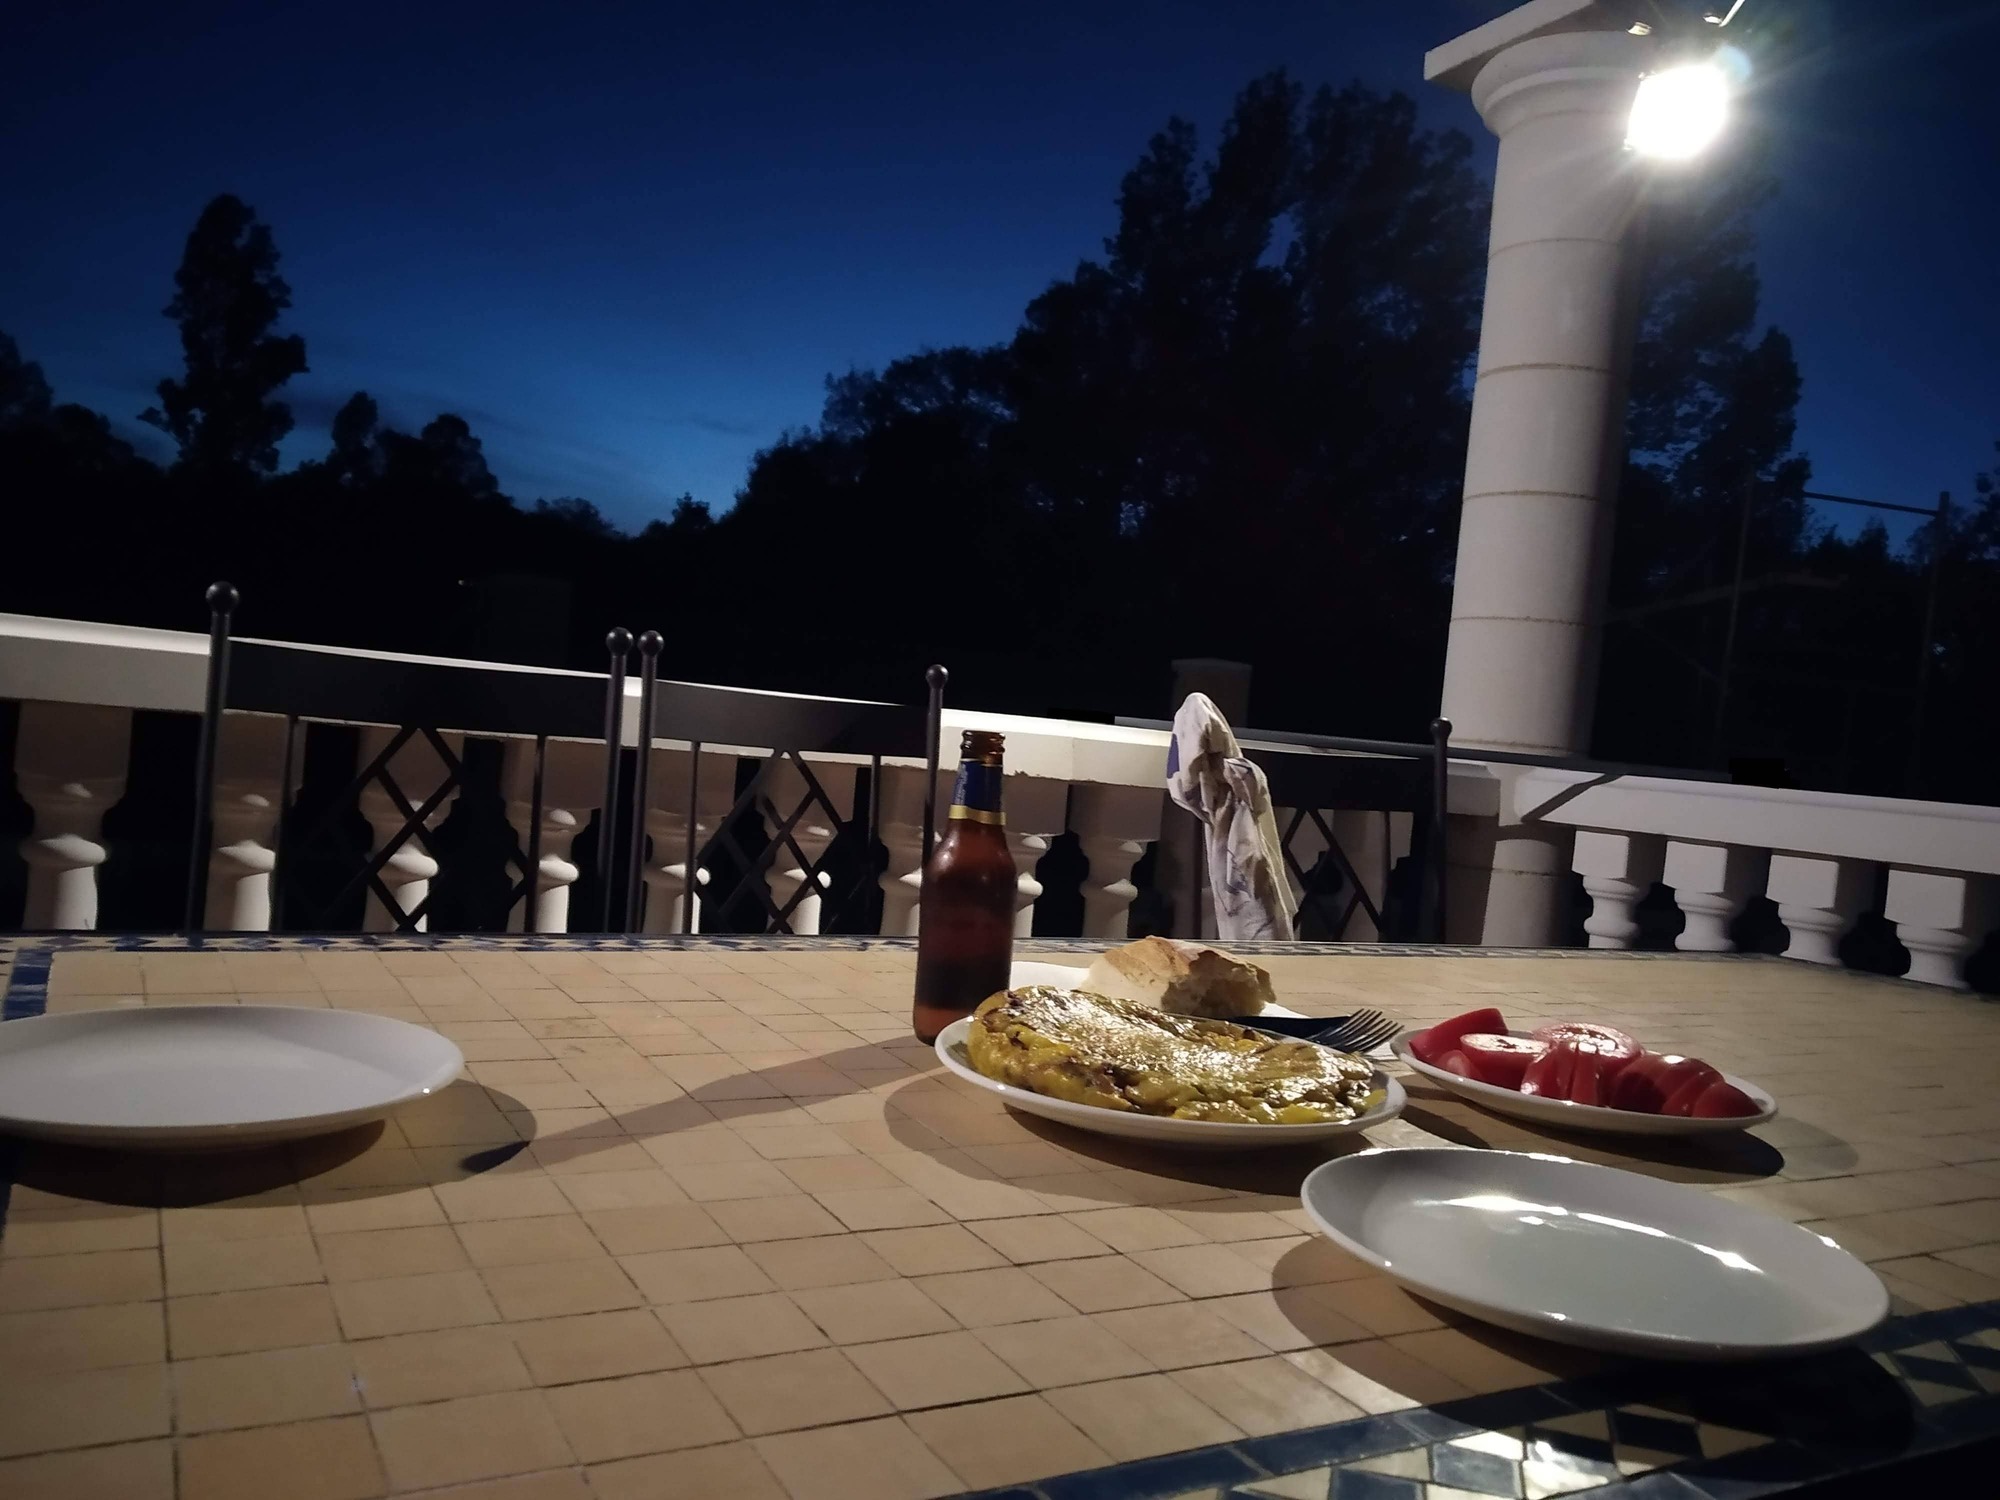 Cena terraza atardecer anochecer disfrutar cielo estrellado azul oscuro